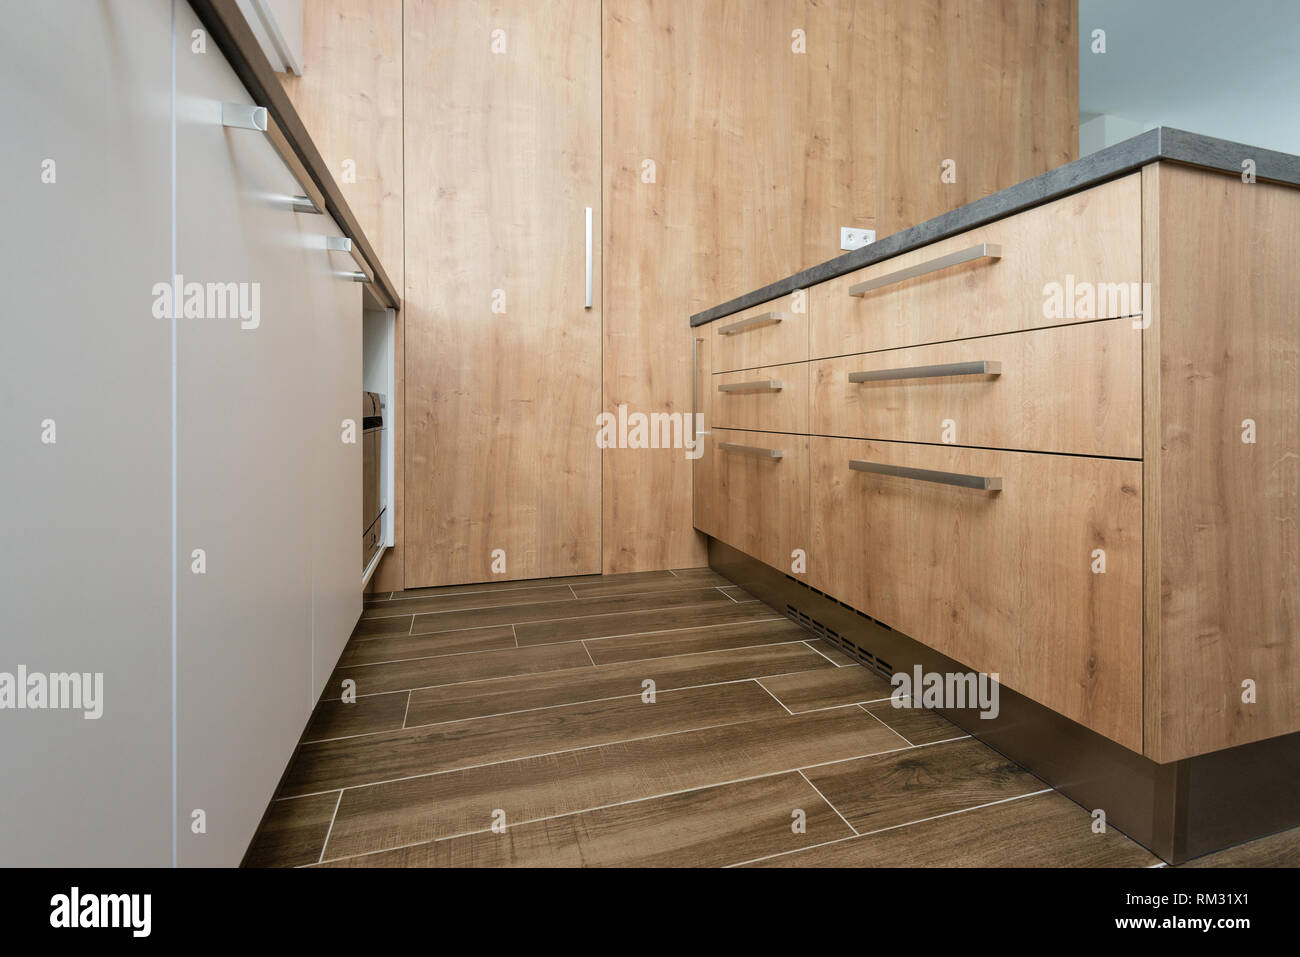 Cabinet en bois avec tiroirs de cuisine moderne Banque D'Images